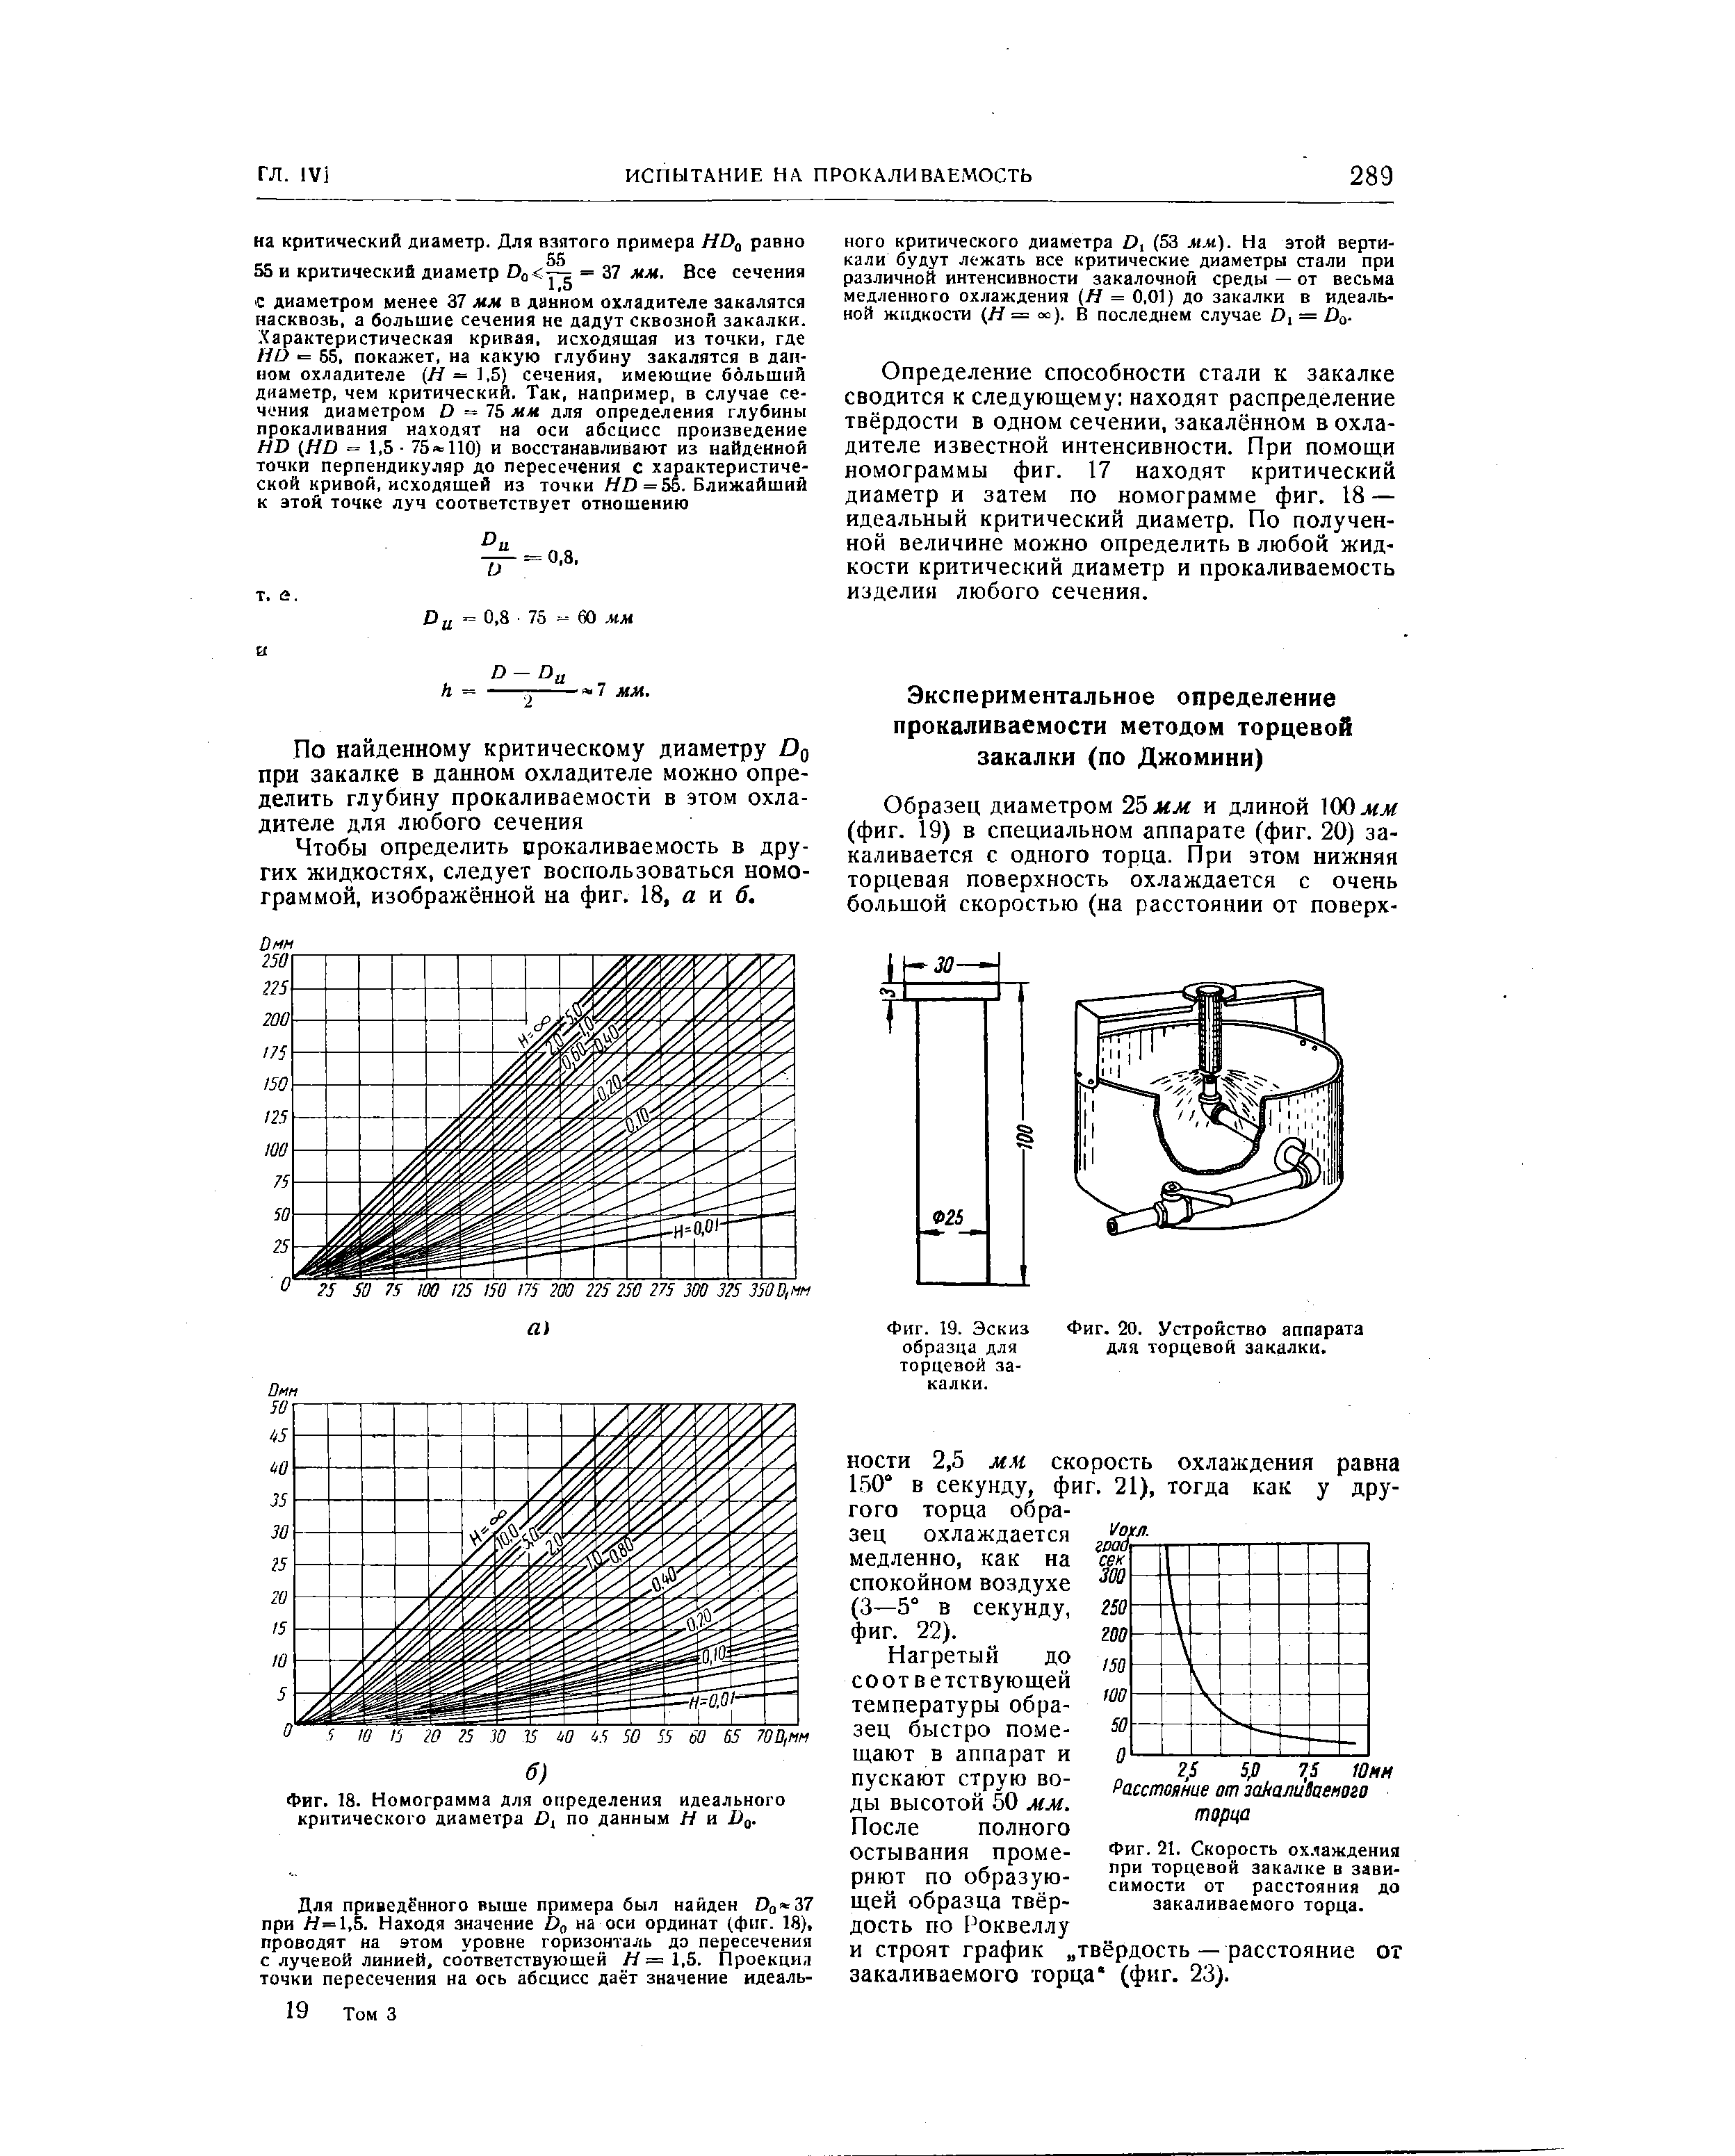 Фиг. 18. Номограмма для определения идеального критического диаметра по данным И и О .
